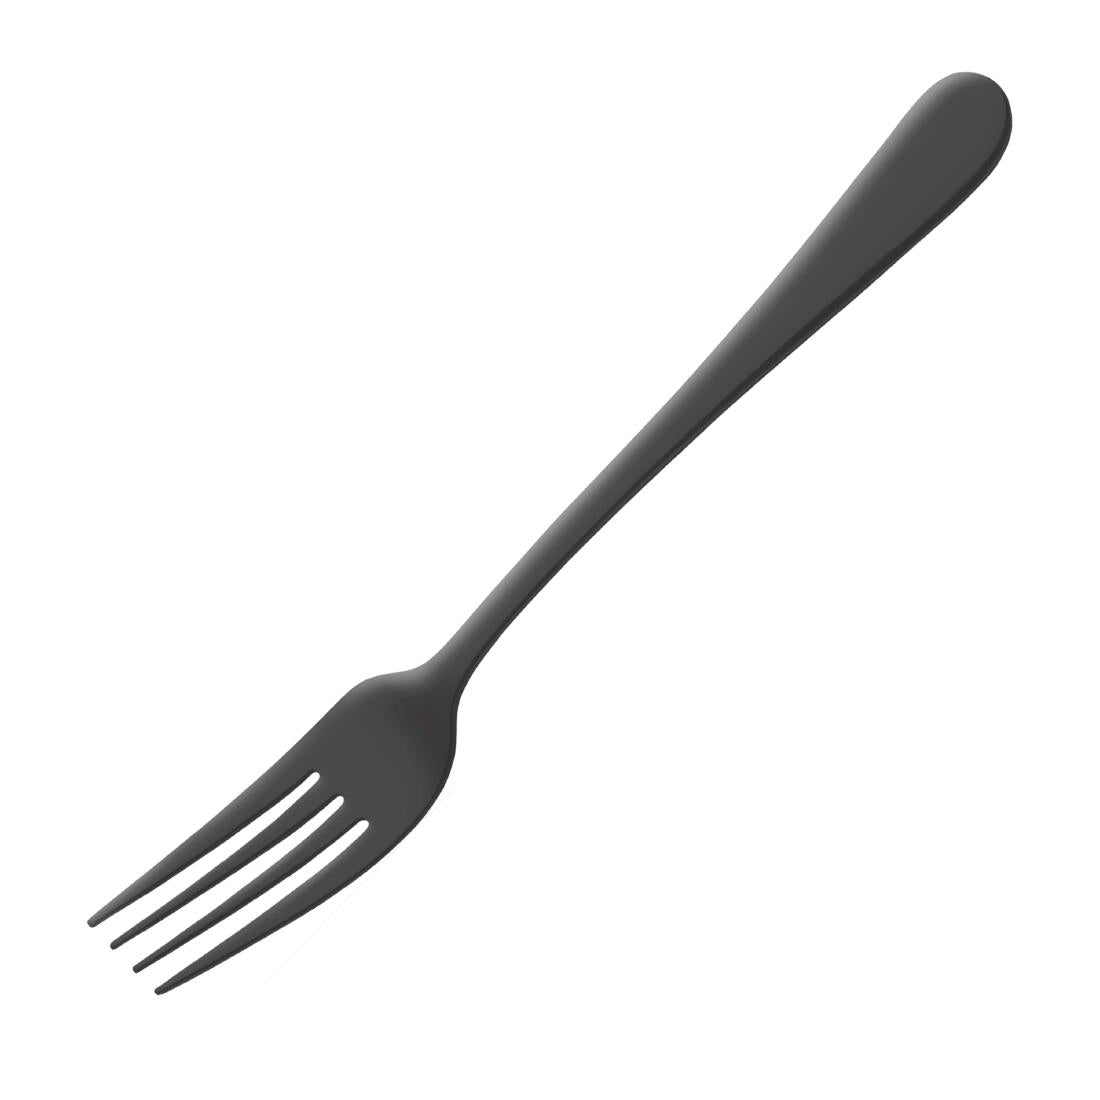 DX635 Amefa Table Fork Black (Pack of 12)